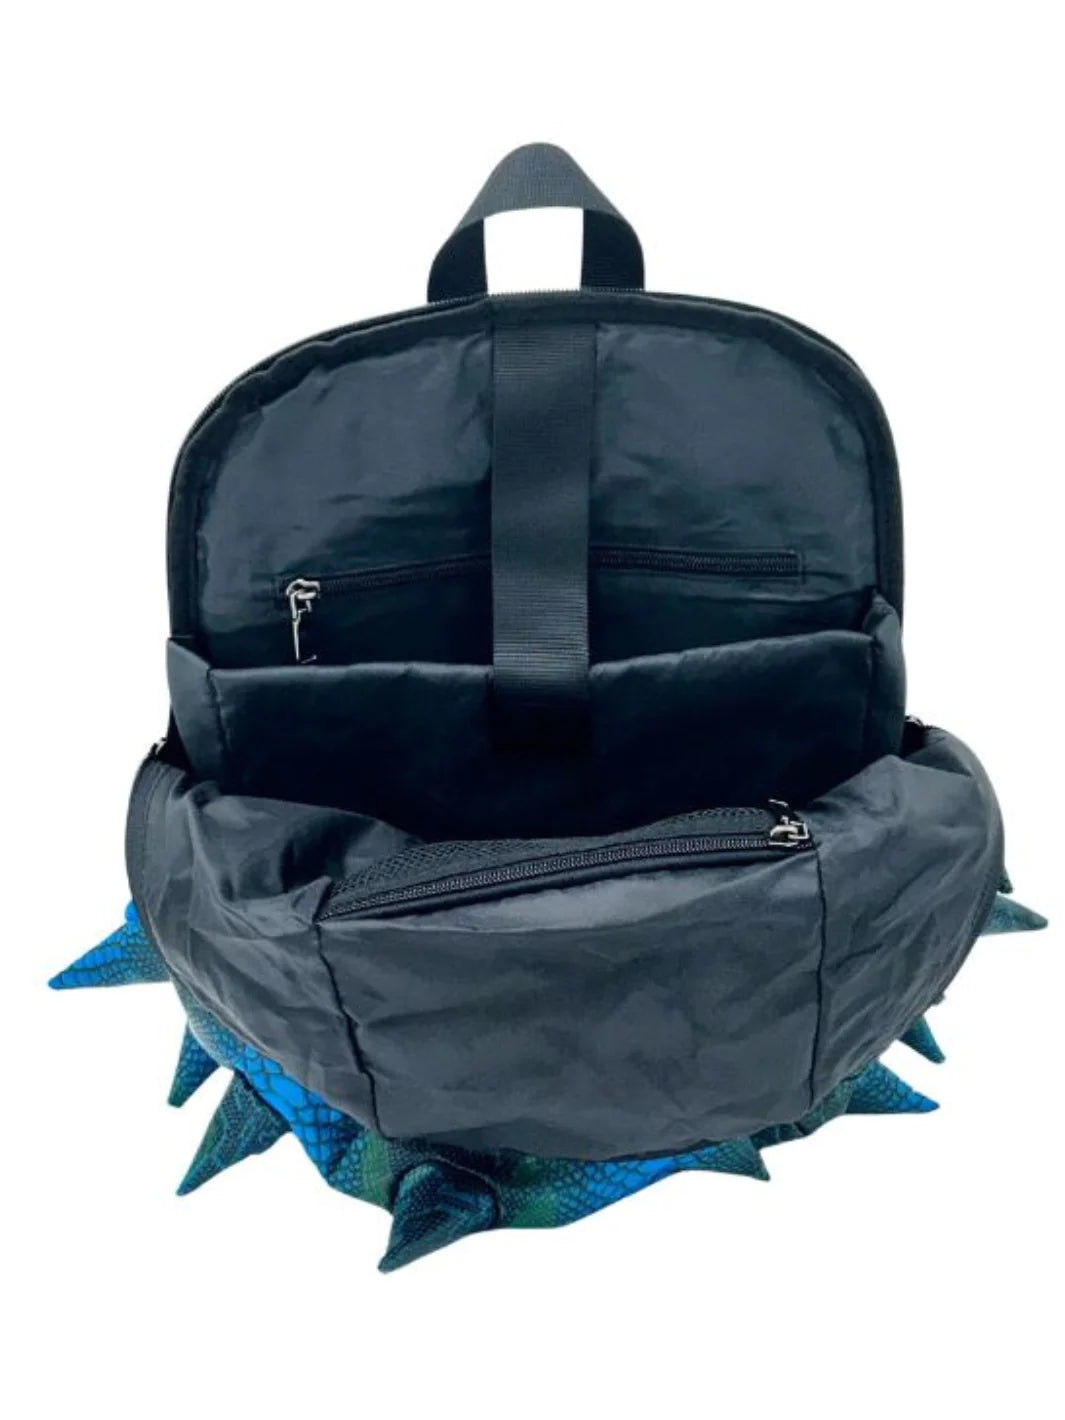 Madpax Spike - Blue Mamba Backpack